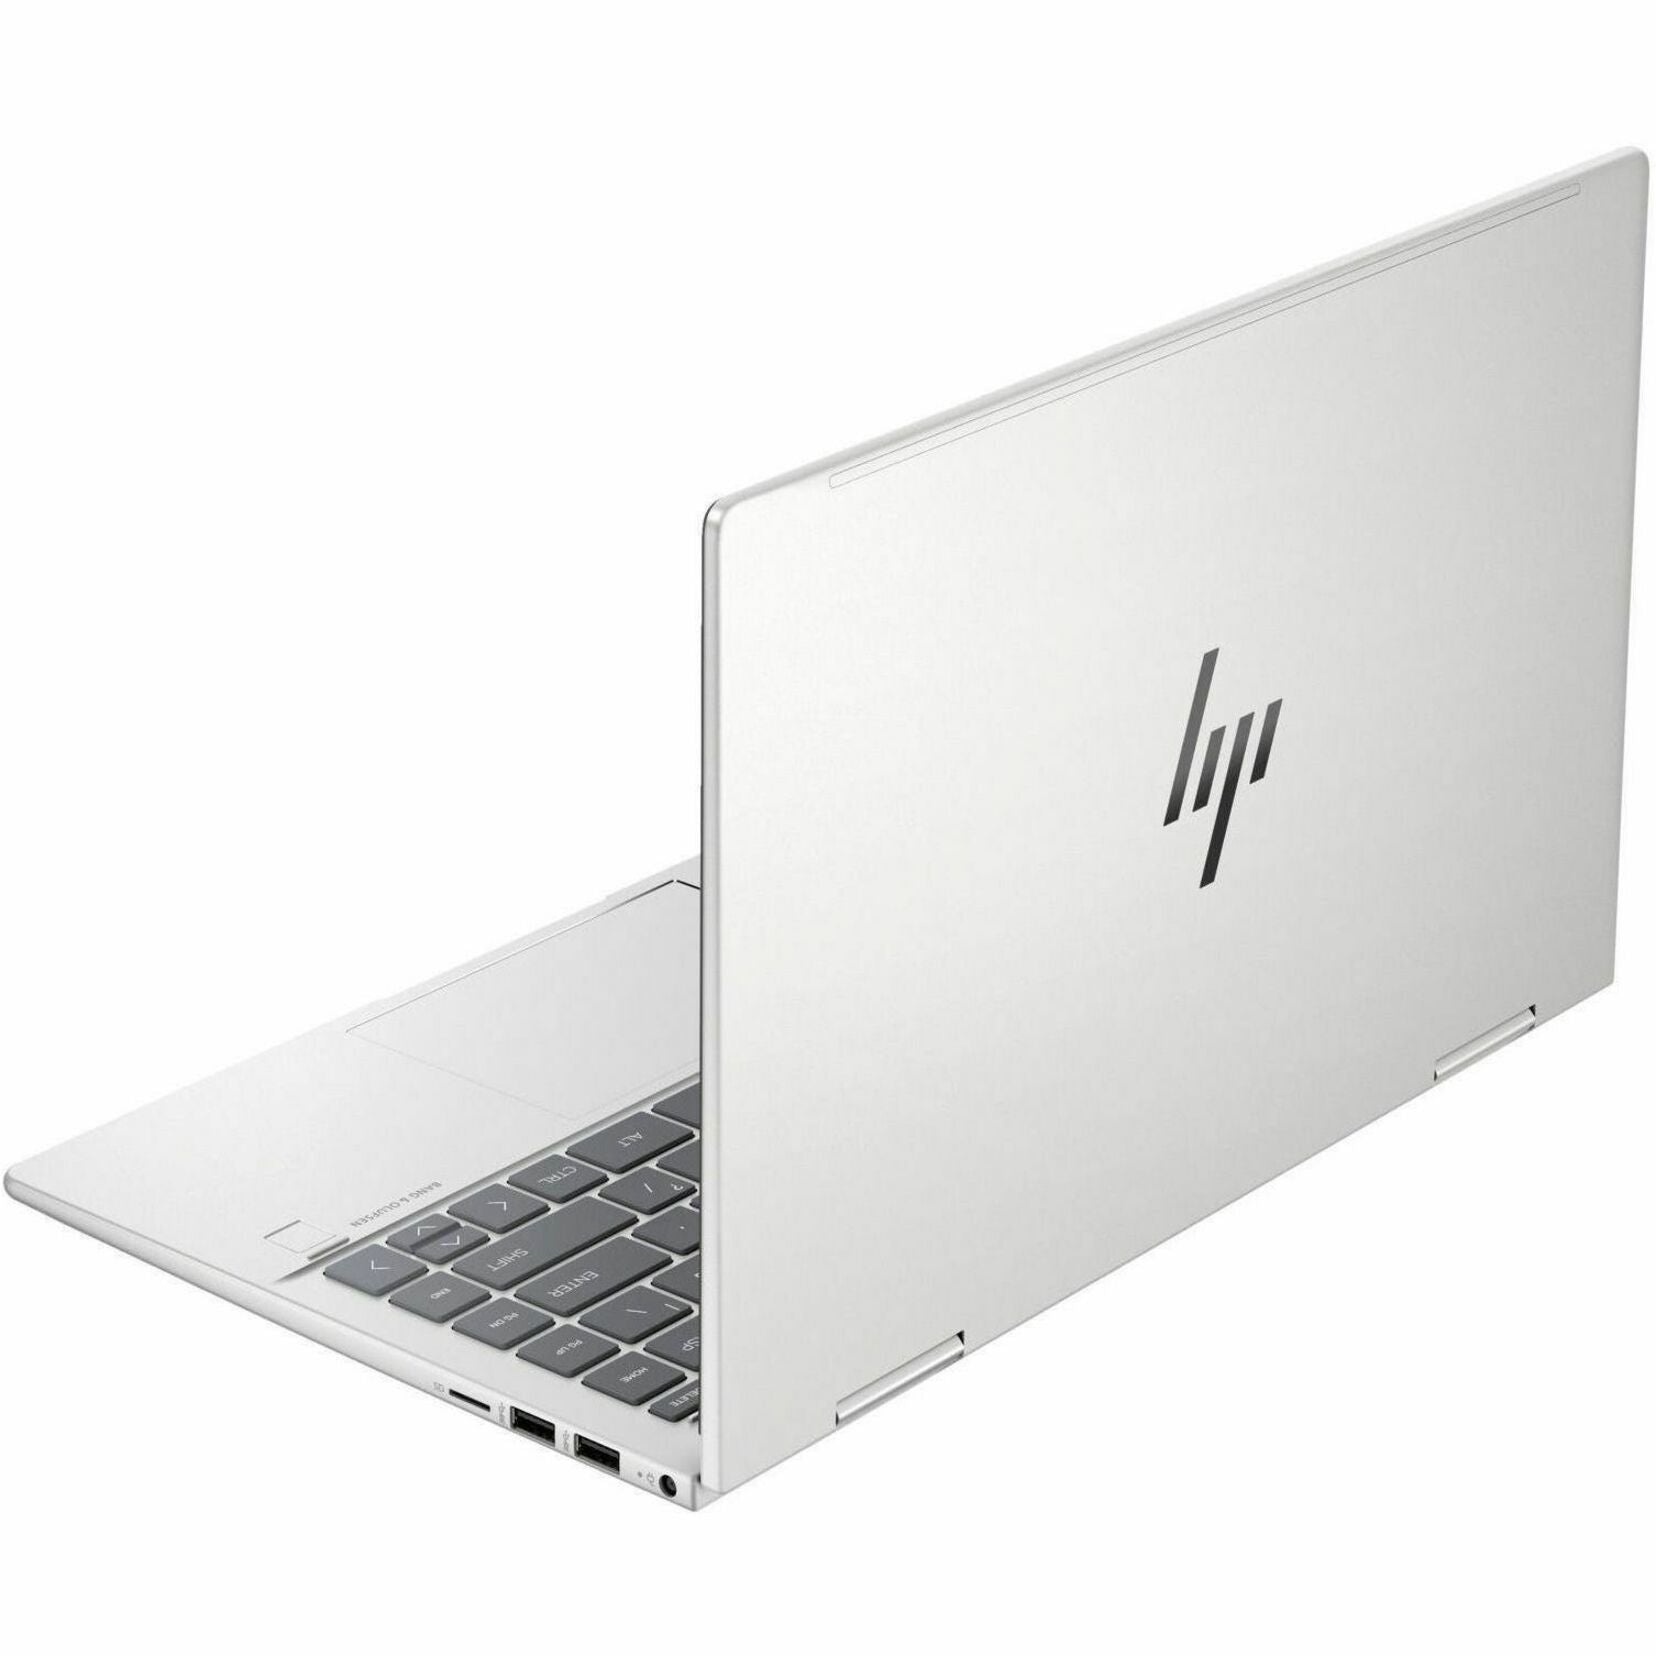 割引可2in1 : HP EliteBook x360 1020 G2 Windowsノート本体